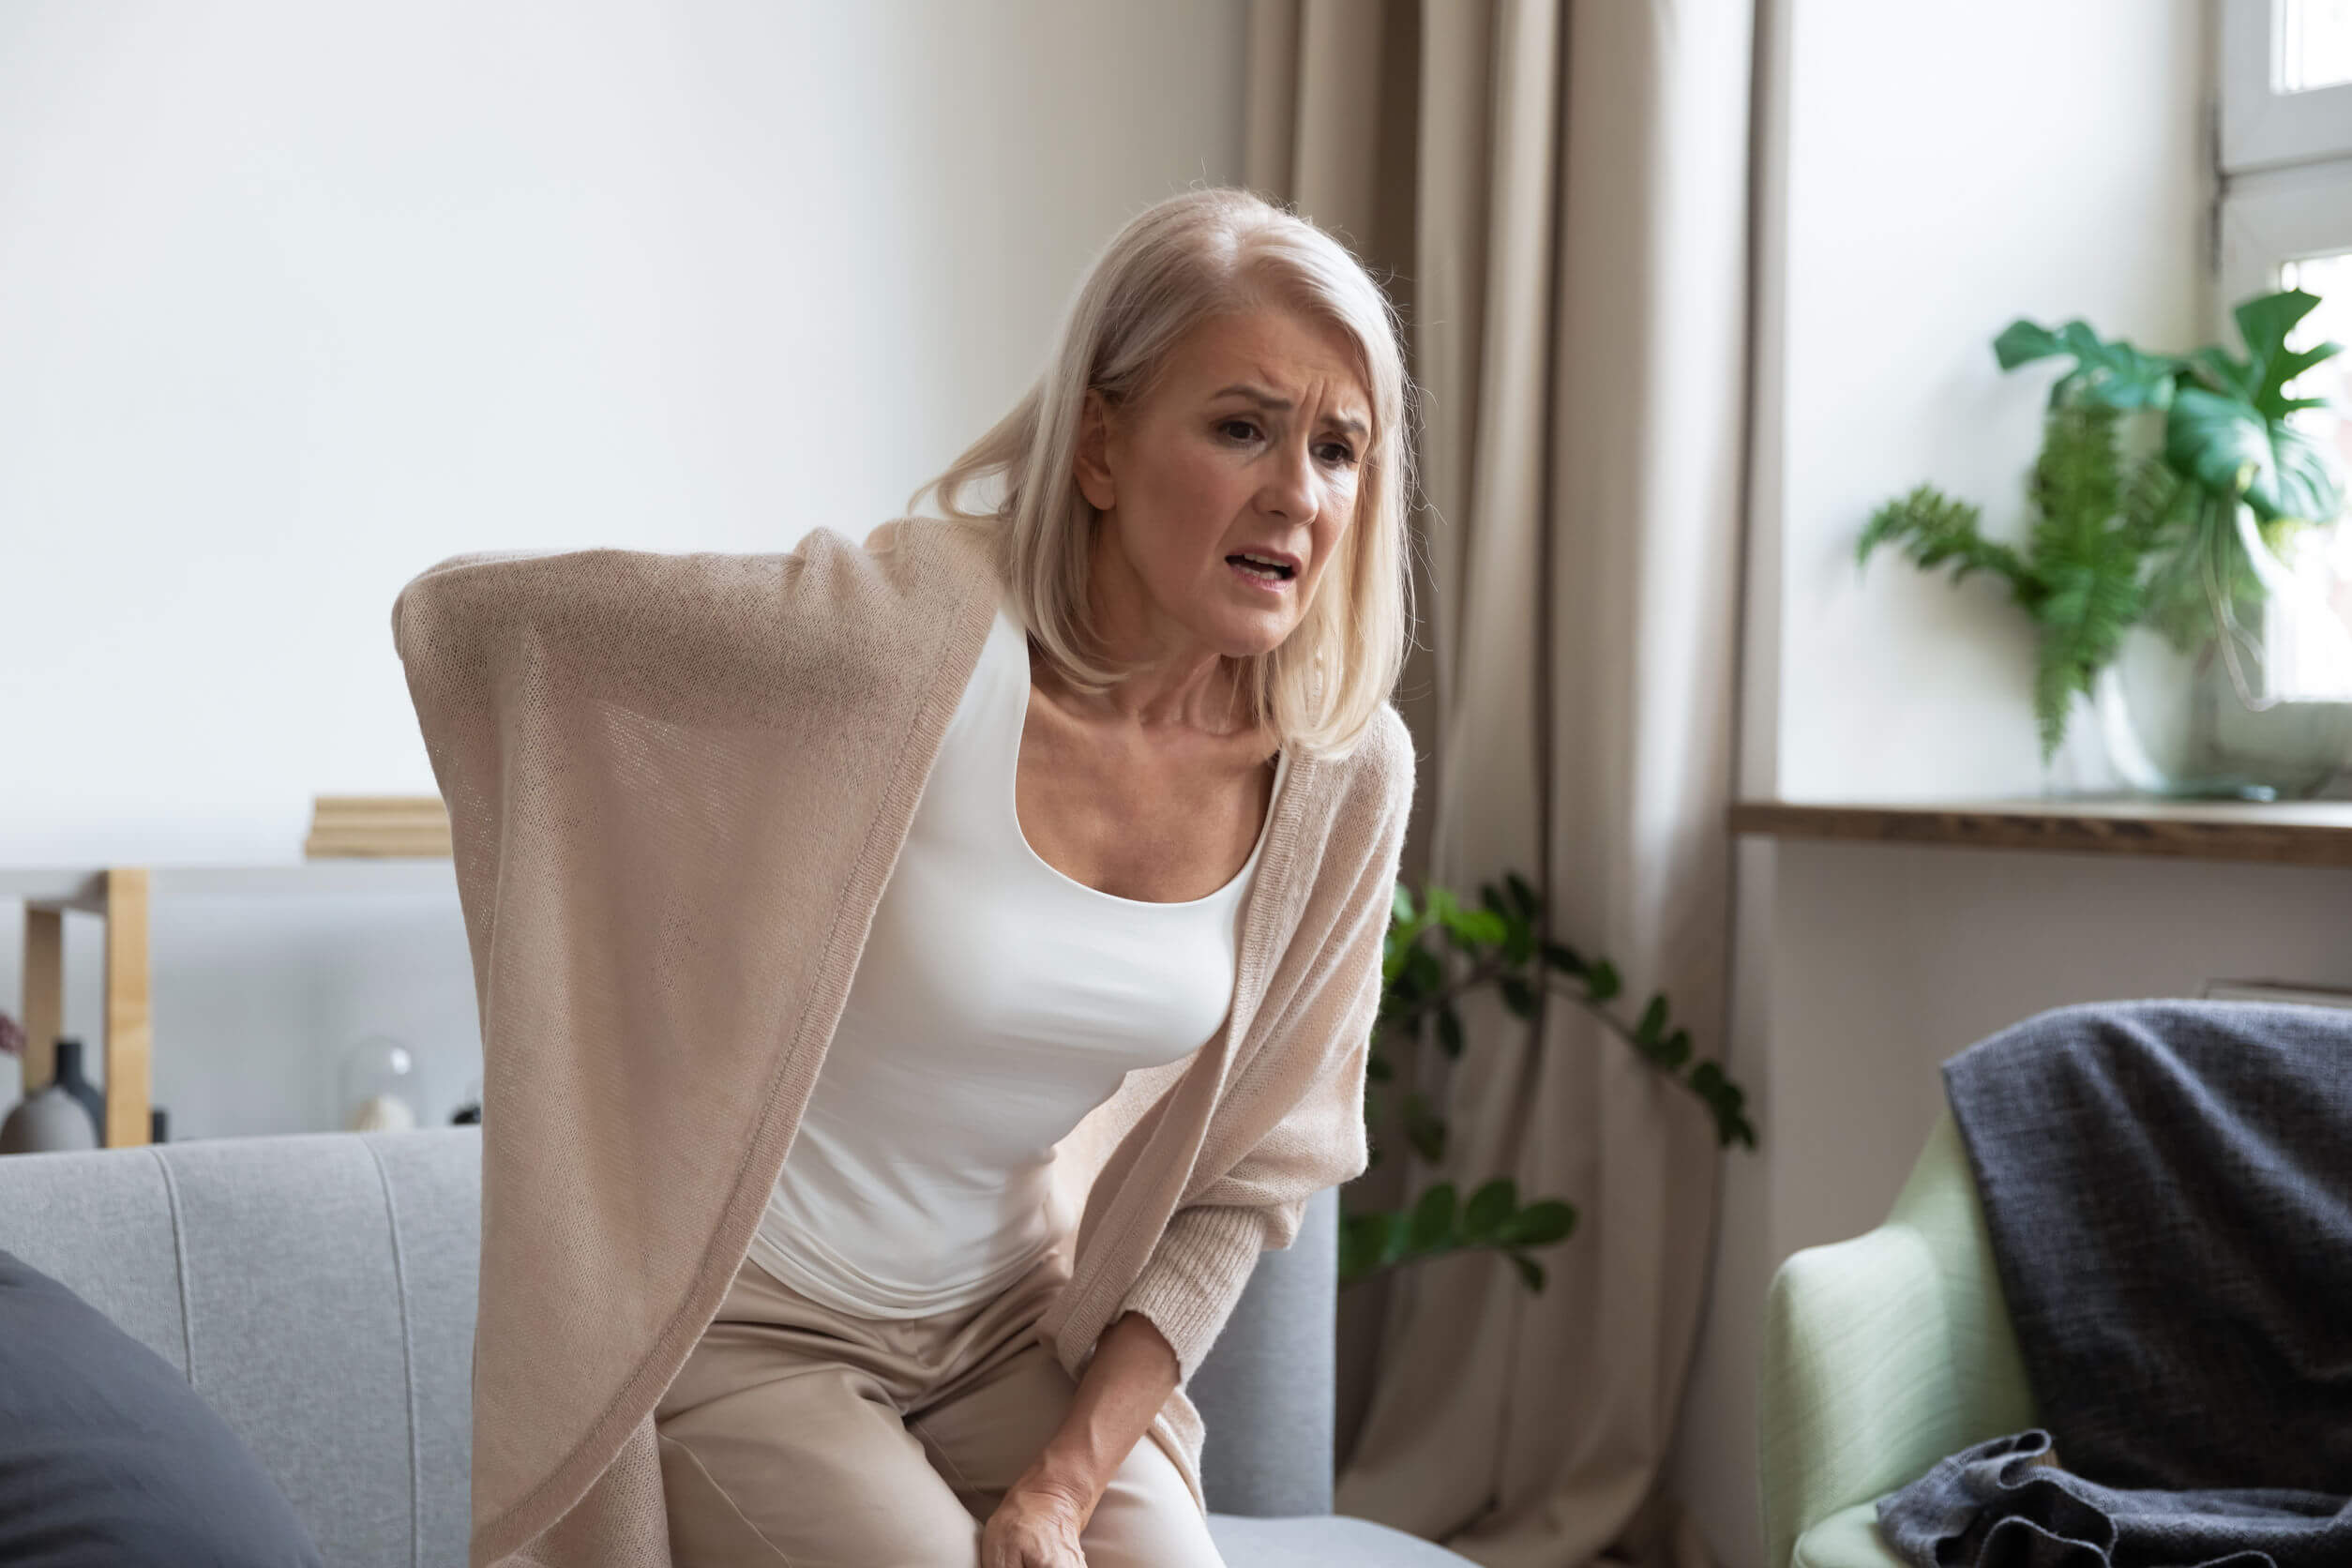 Las causas y factores de riesgo de la menopausia son específicas